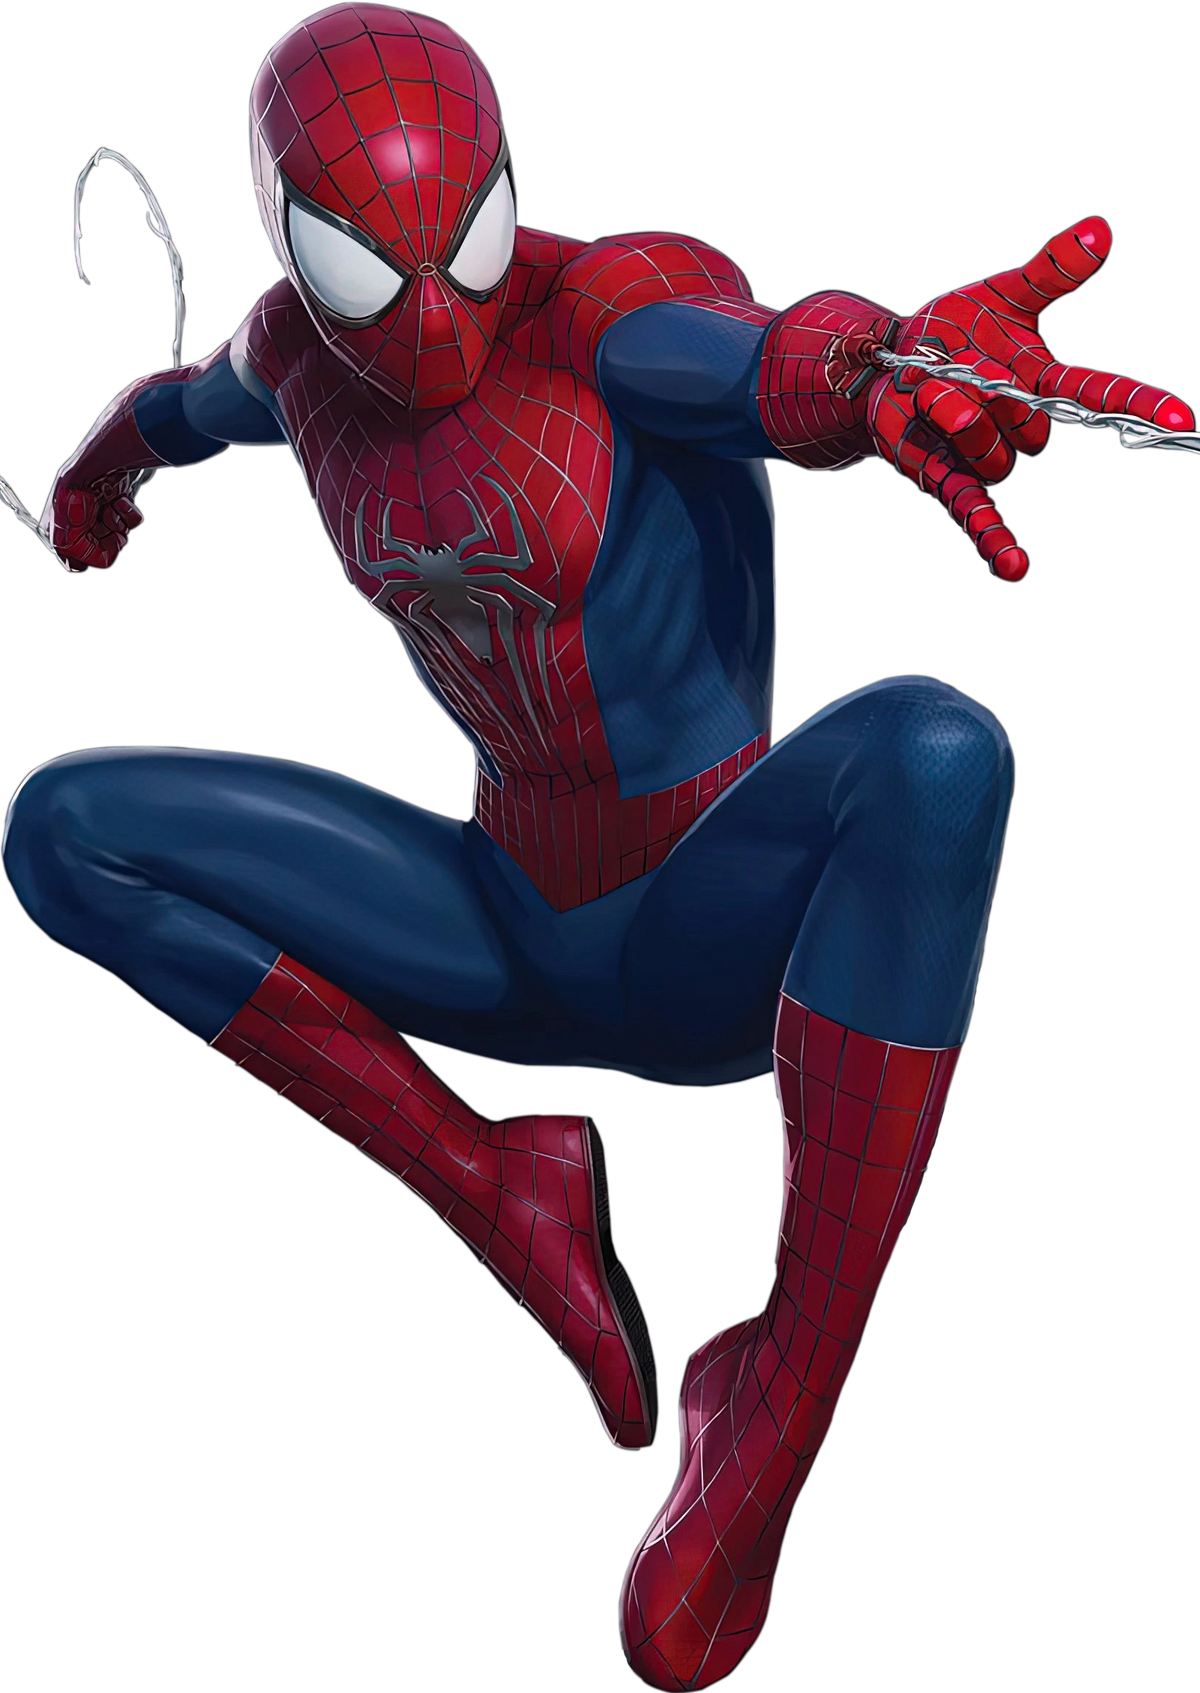 The Amazing Spider-Man 2, Amazing Spider-Man Wiki